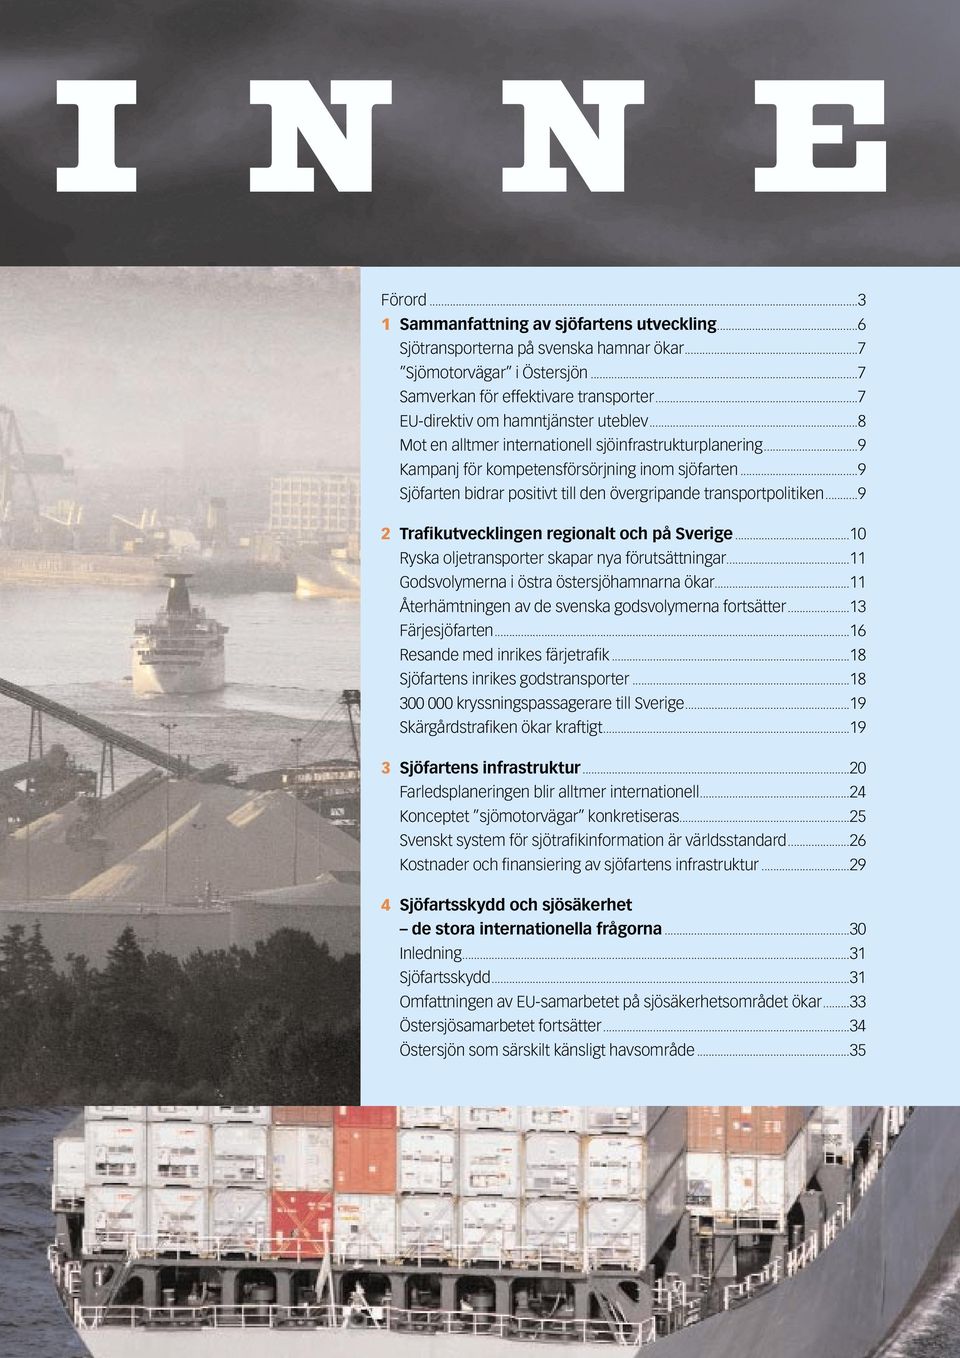 ..9 Sjöfarten bidrar positivt till den övergripande transportpolitiken...9 2 Trafikutvecklingen regionalt och på Sverige...10 Ryska oljetransporter skapar nya förutsättningar.